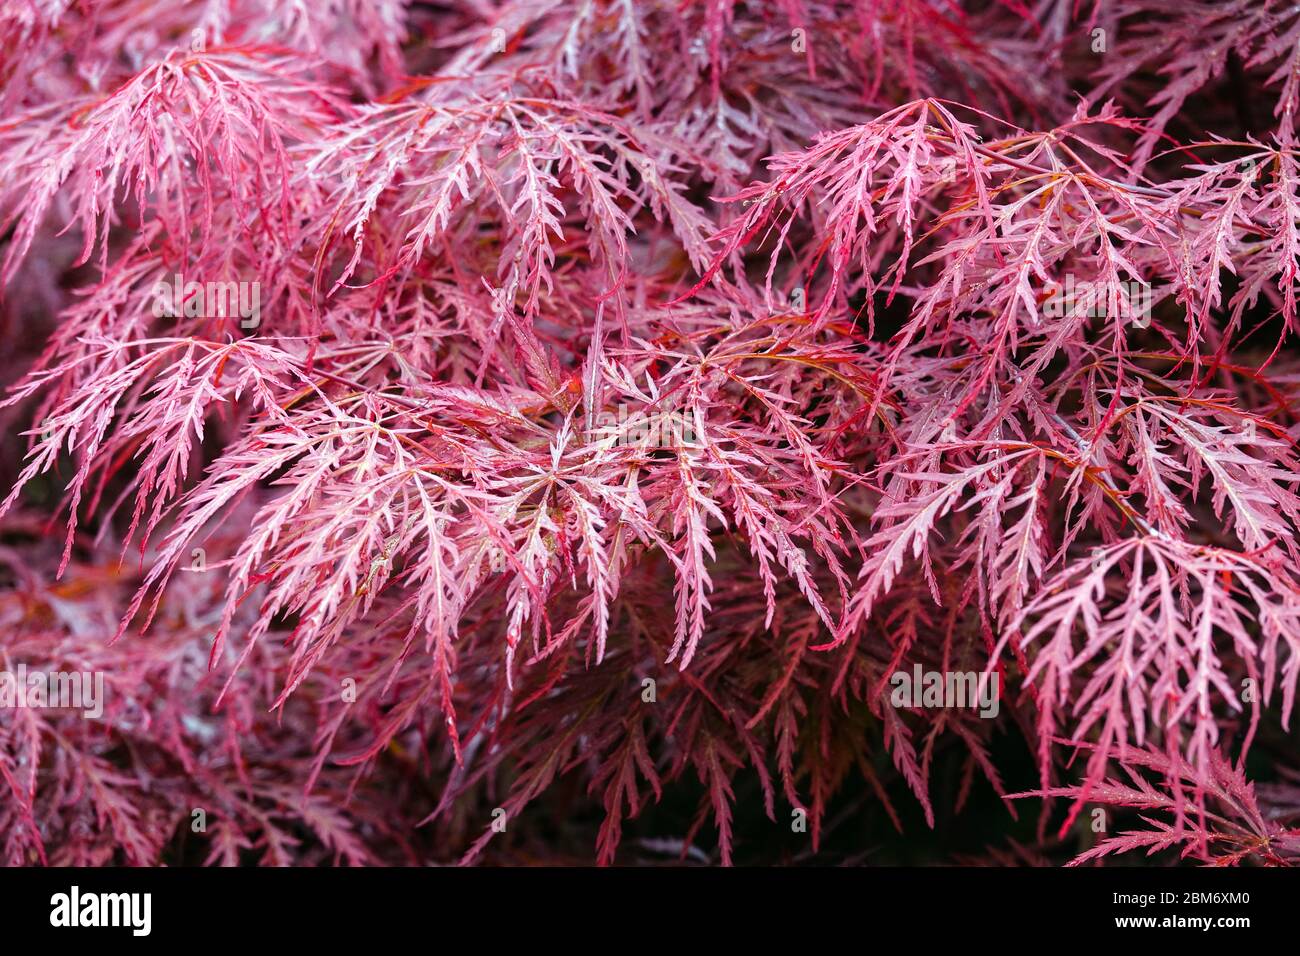 Acer palmatum 'Dissectum' Japanese maple Stock Photo